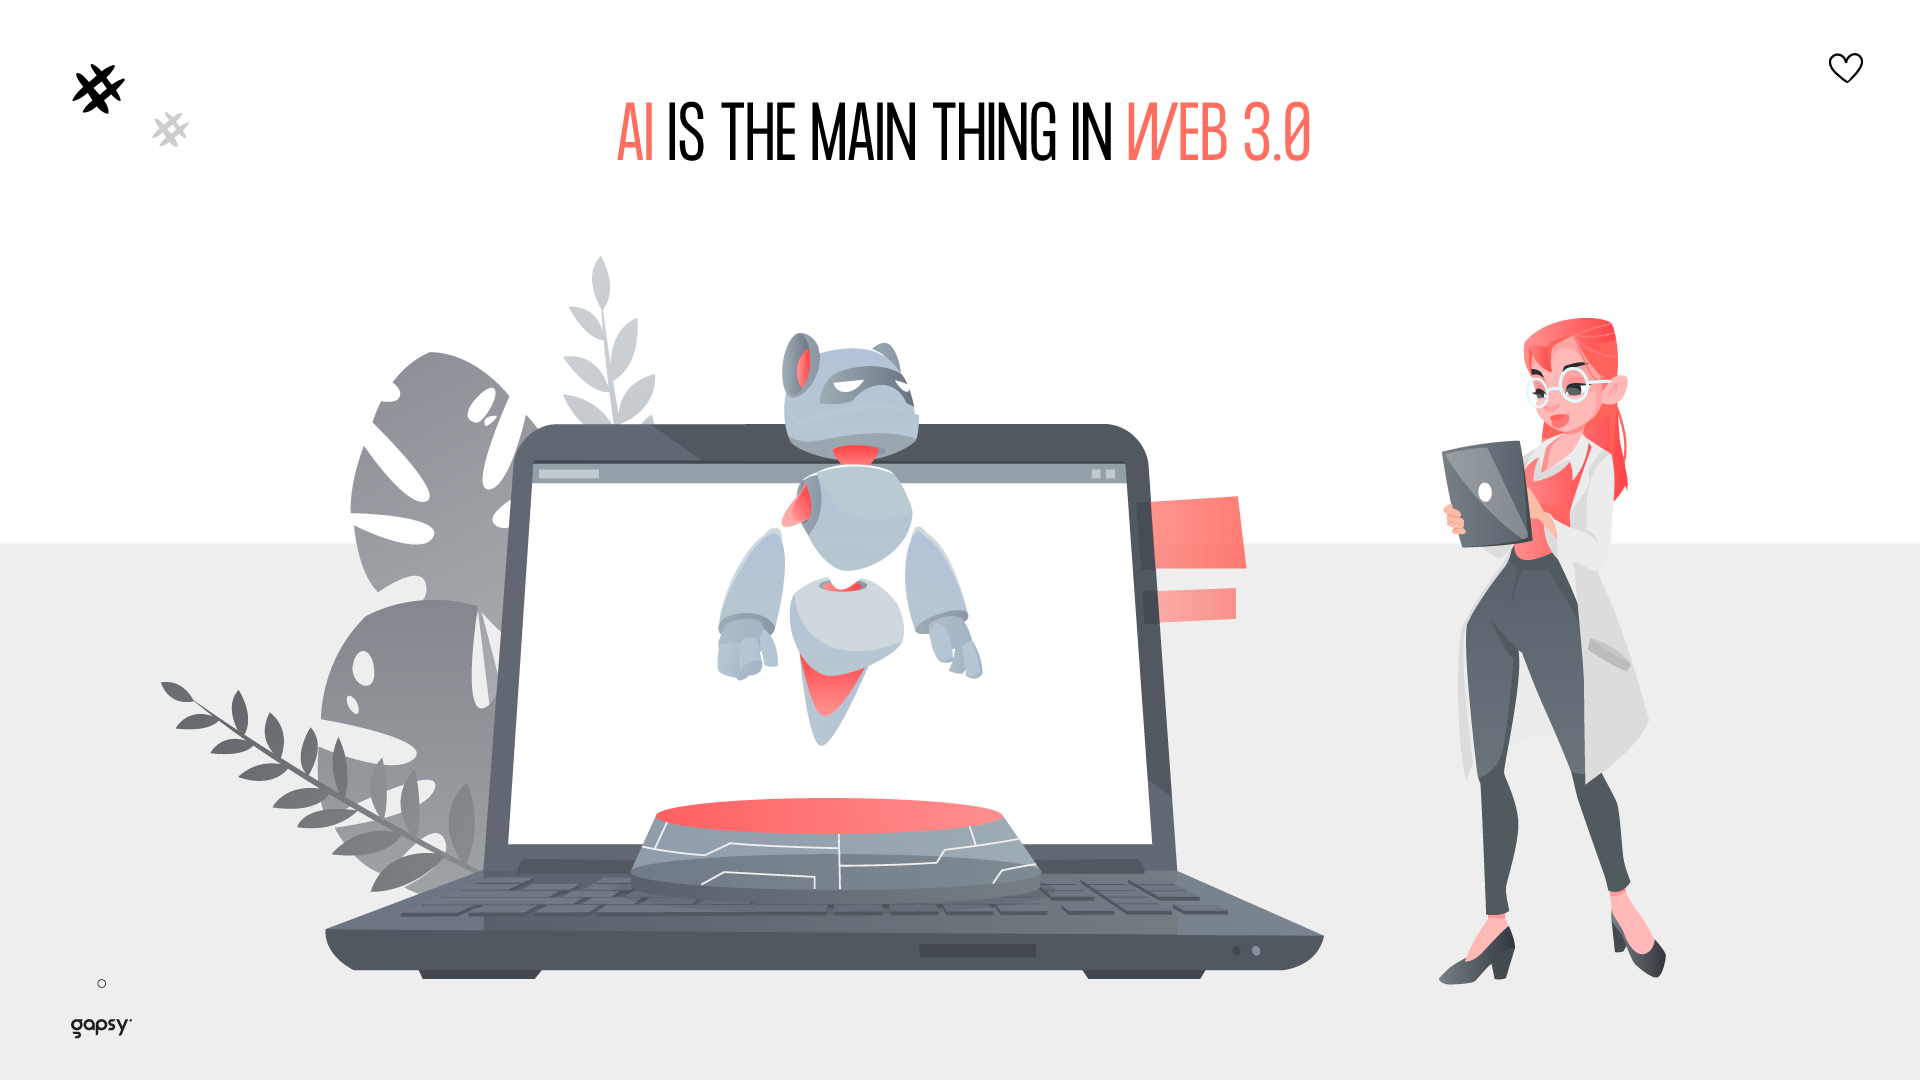 Web 3.0 is based on AI